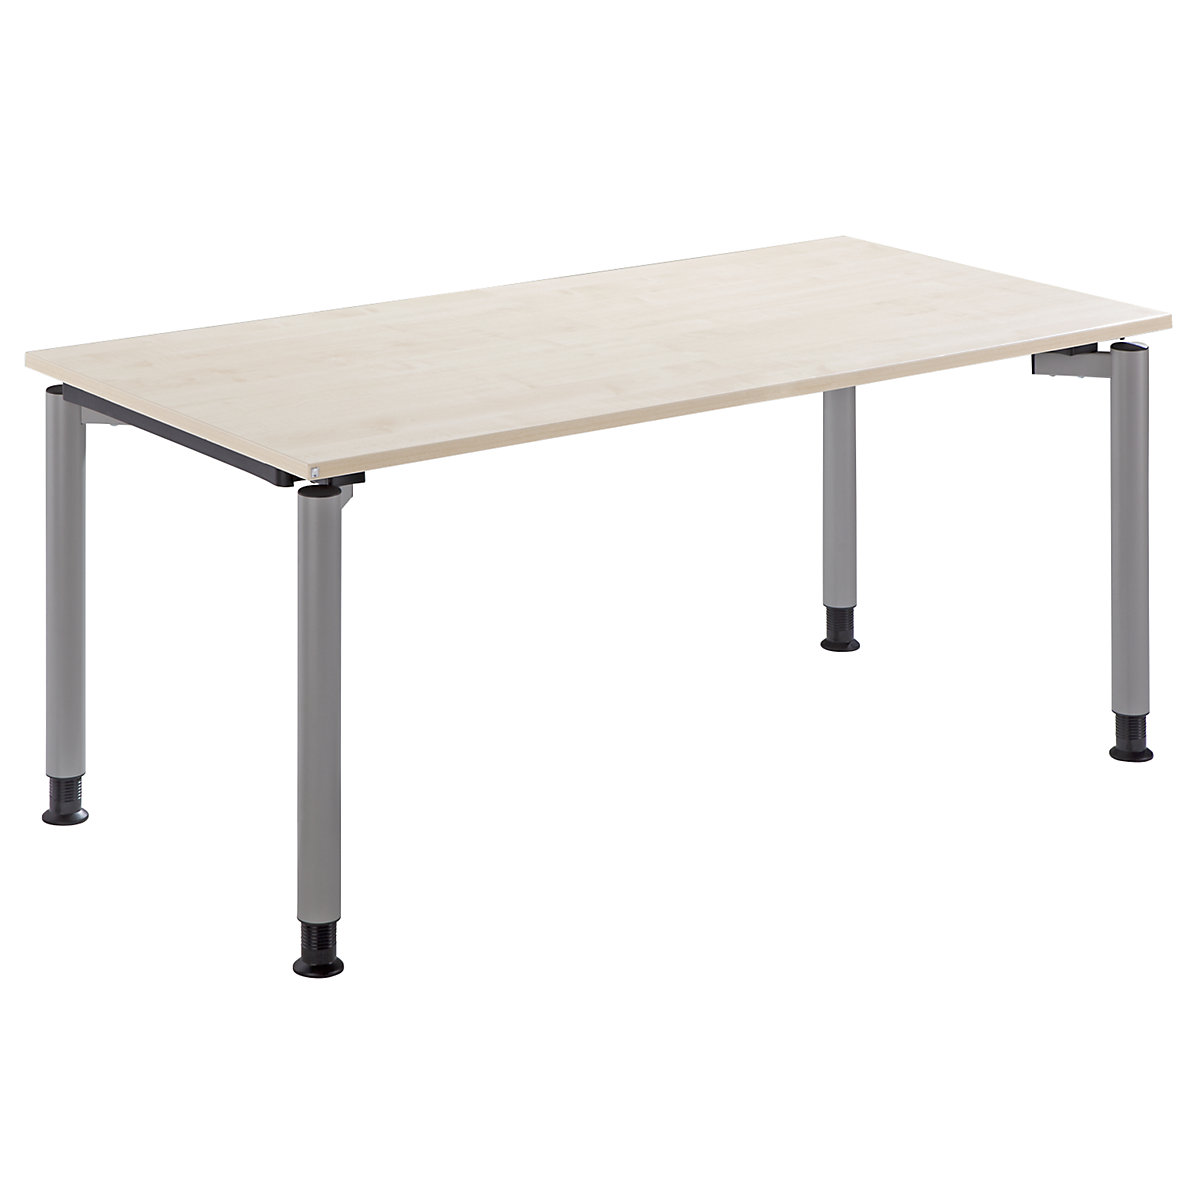 THEA Pisaći stol s postoljem s 4 noge, visina 680 – 820 mm, širina 1600 mm, imitacija javora